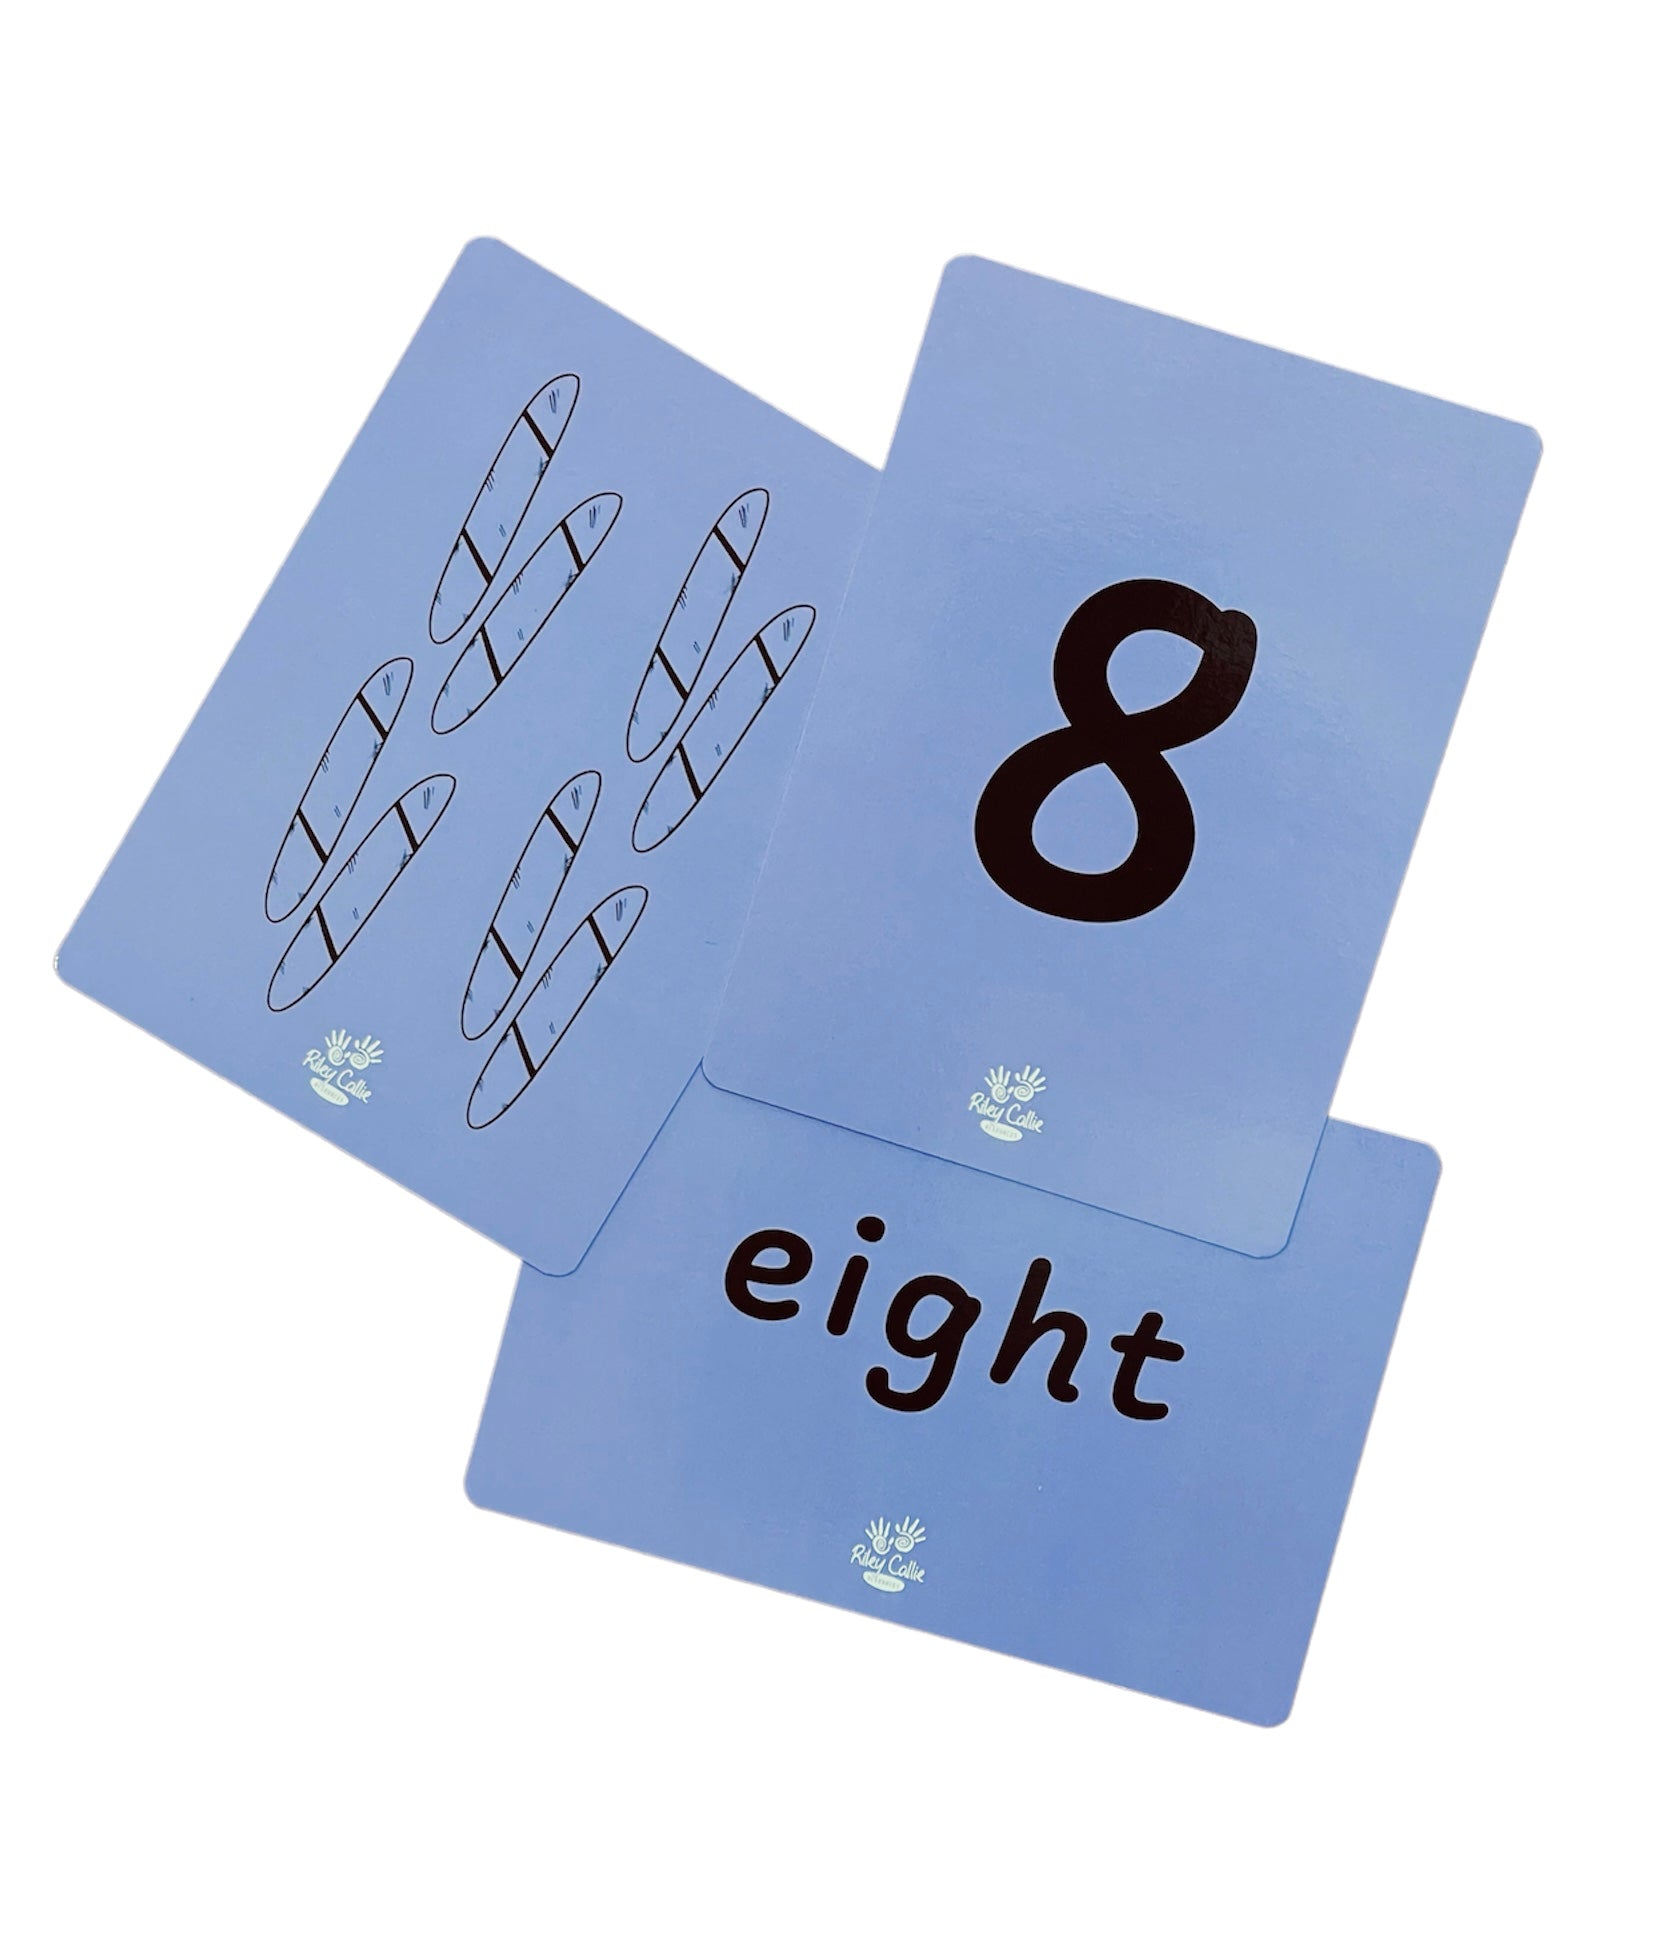 Aboriginal Number Flash Cards